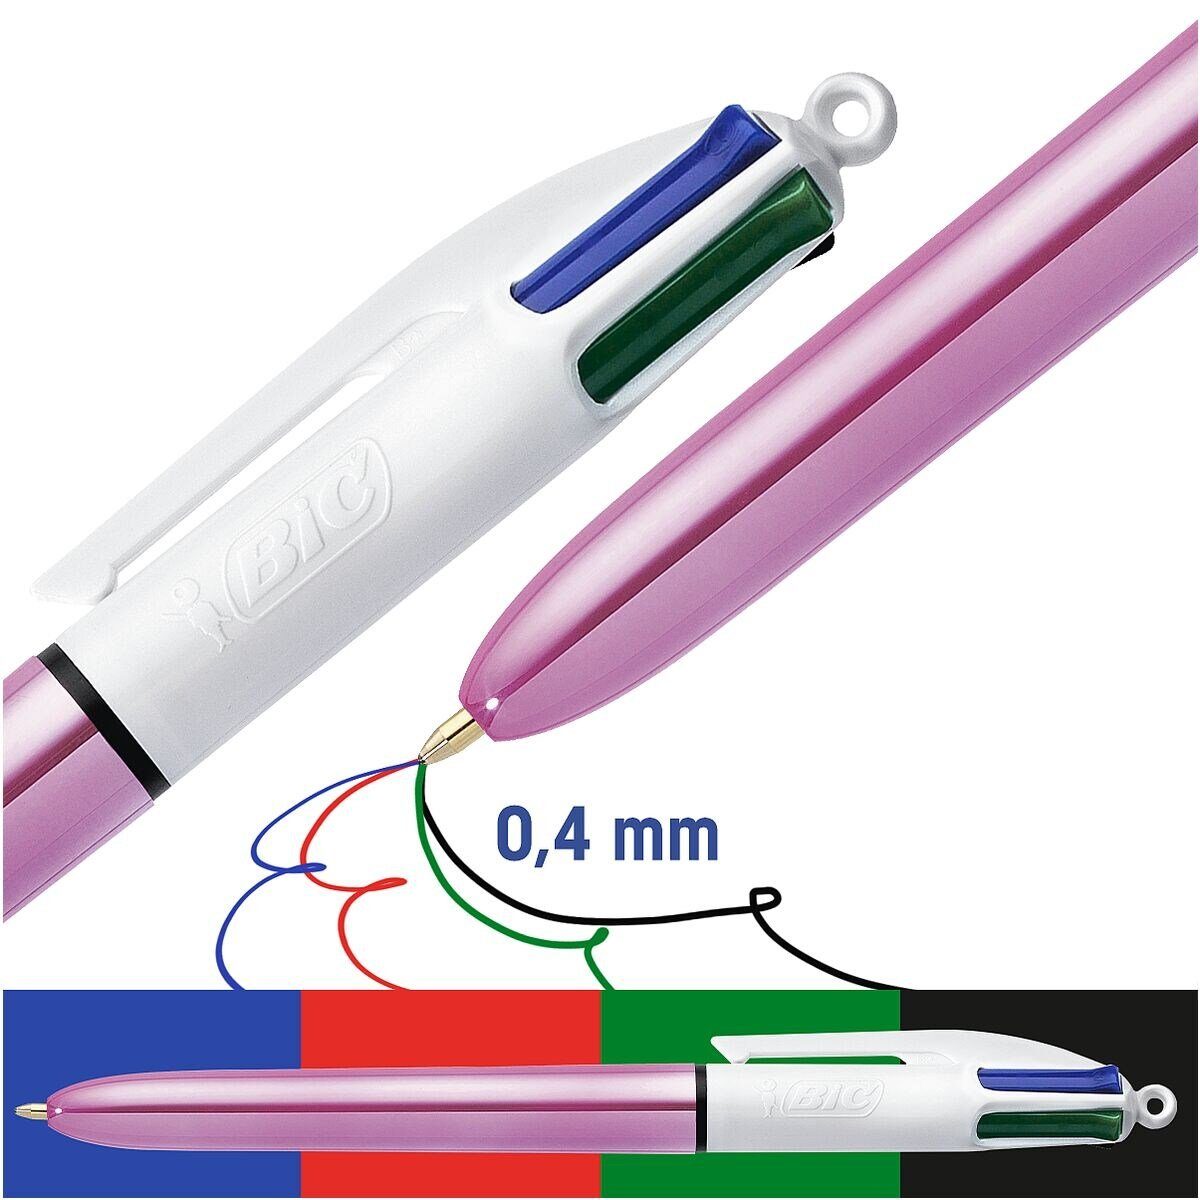 BIC Kugelschreiber 4 Colours Shine, 4 pink in Stift Farben einem